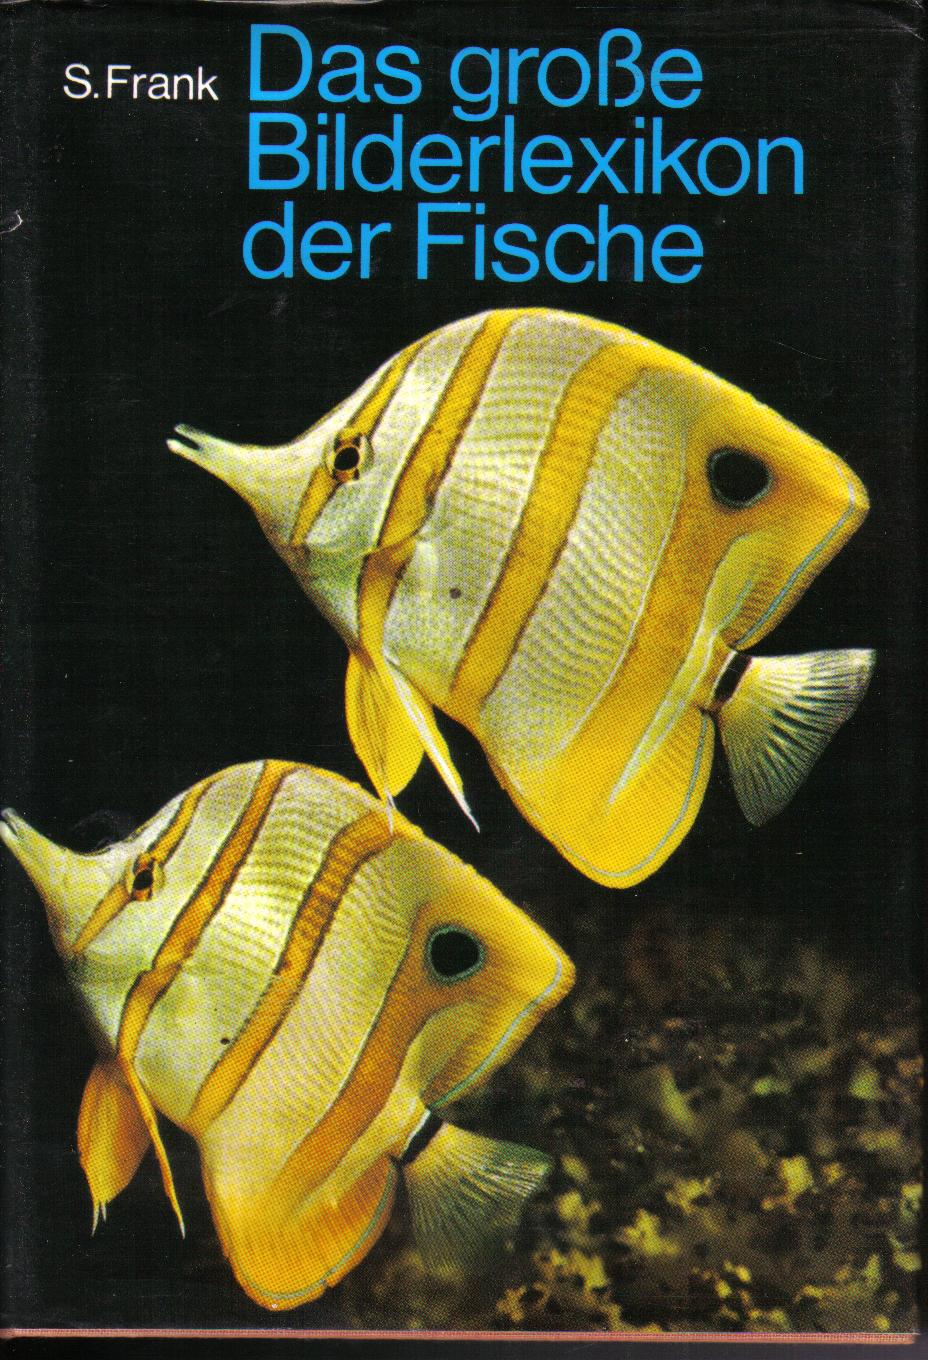 Gas grosse Bilderlexikon der FischeS.Frank